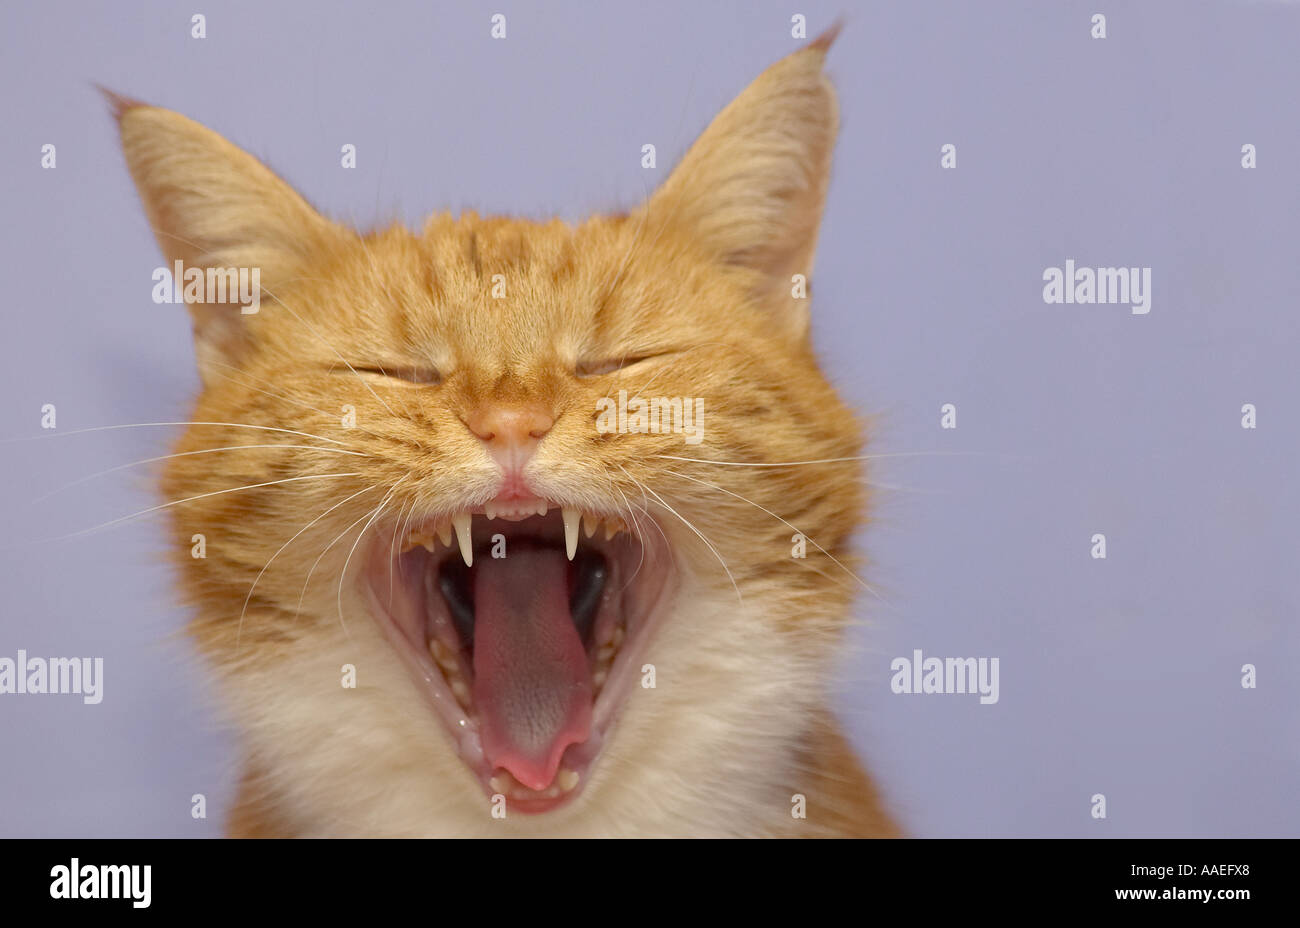 Une seule femelle adulte Ginger cat (Felis catus) Le bâillement avec sa bouche grande ouverte Banque D'Images